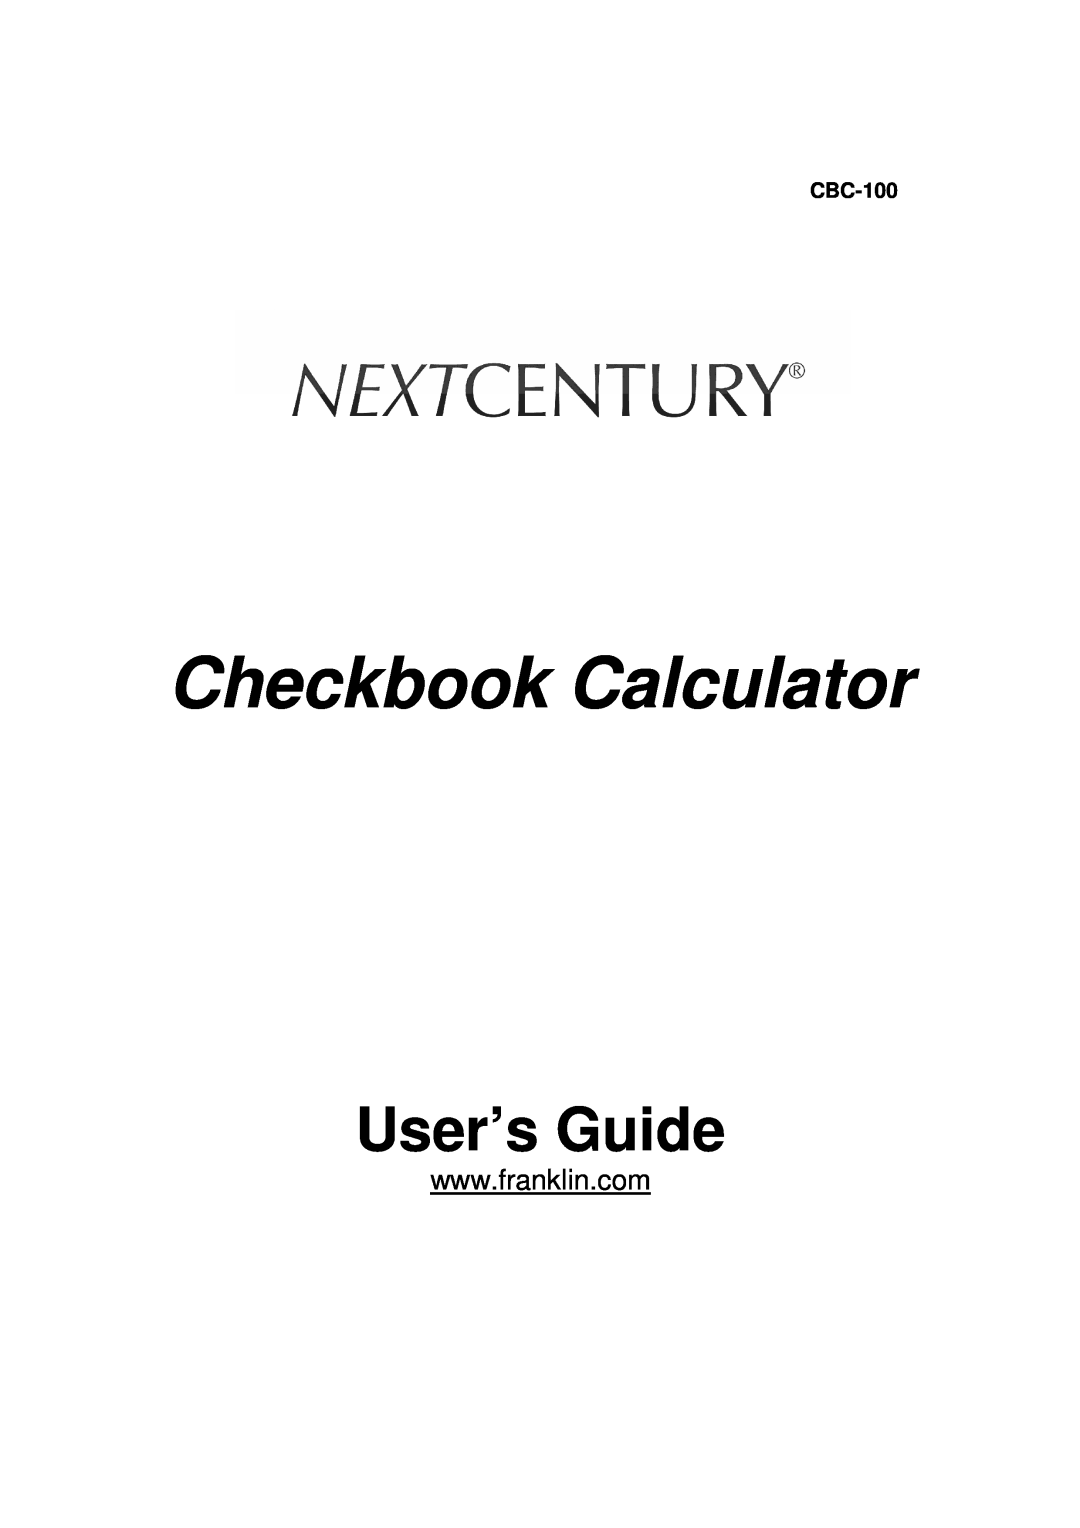 Franklin CBC-100 manual Checkbook Calculator, User’s Guide 